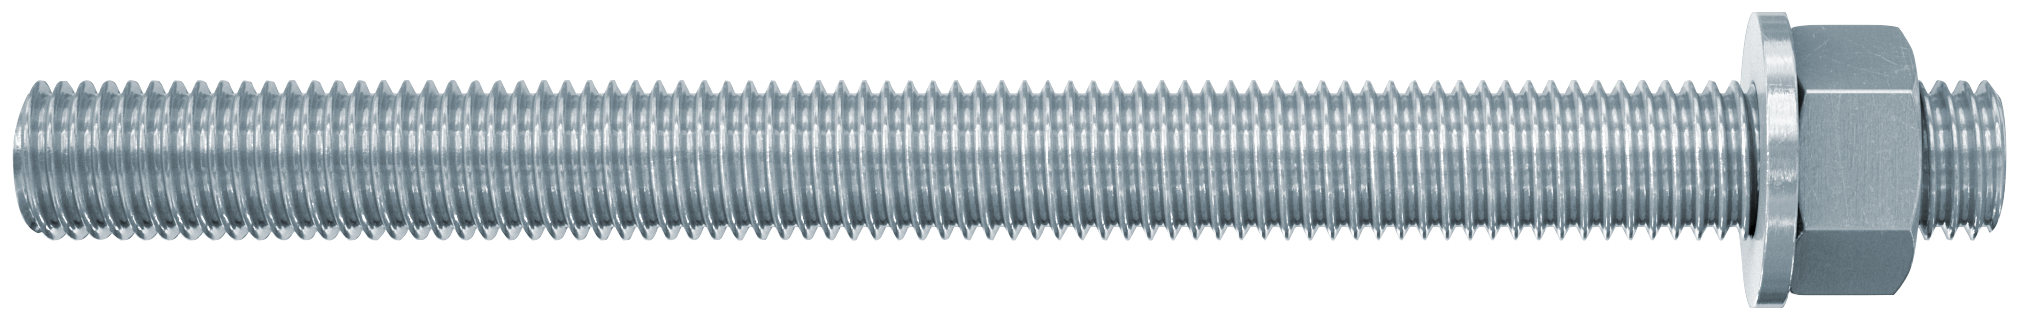 fischer Barre filettate in acciaio FIS A M 12 X 180 8.8 (1 Pz.) Barra filettata in acciaio zincato con classe di resistenza 8.8, con taglio dritto, dado e rosetta fie2254